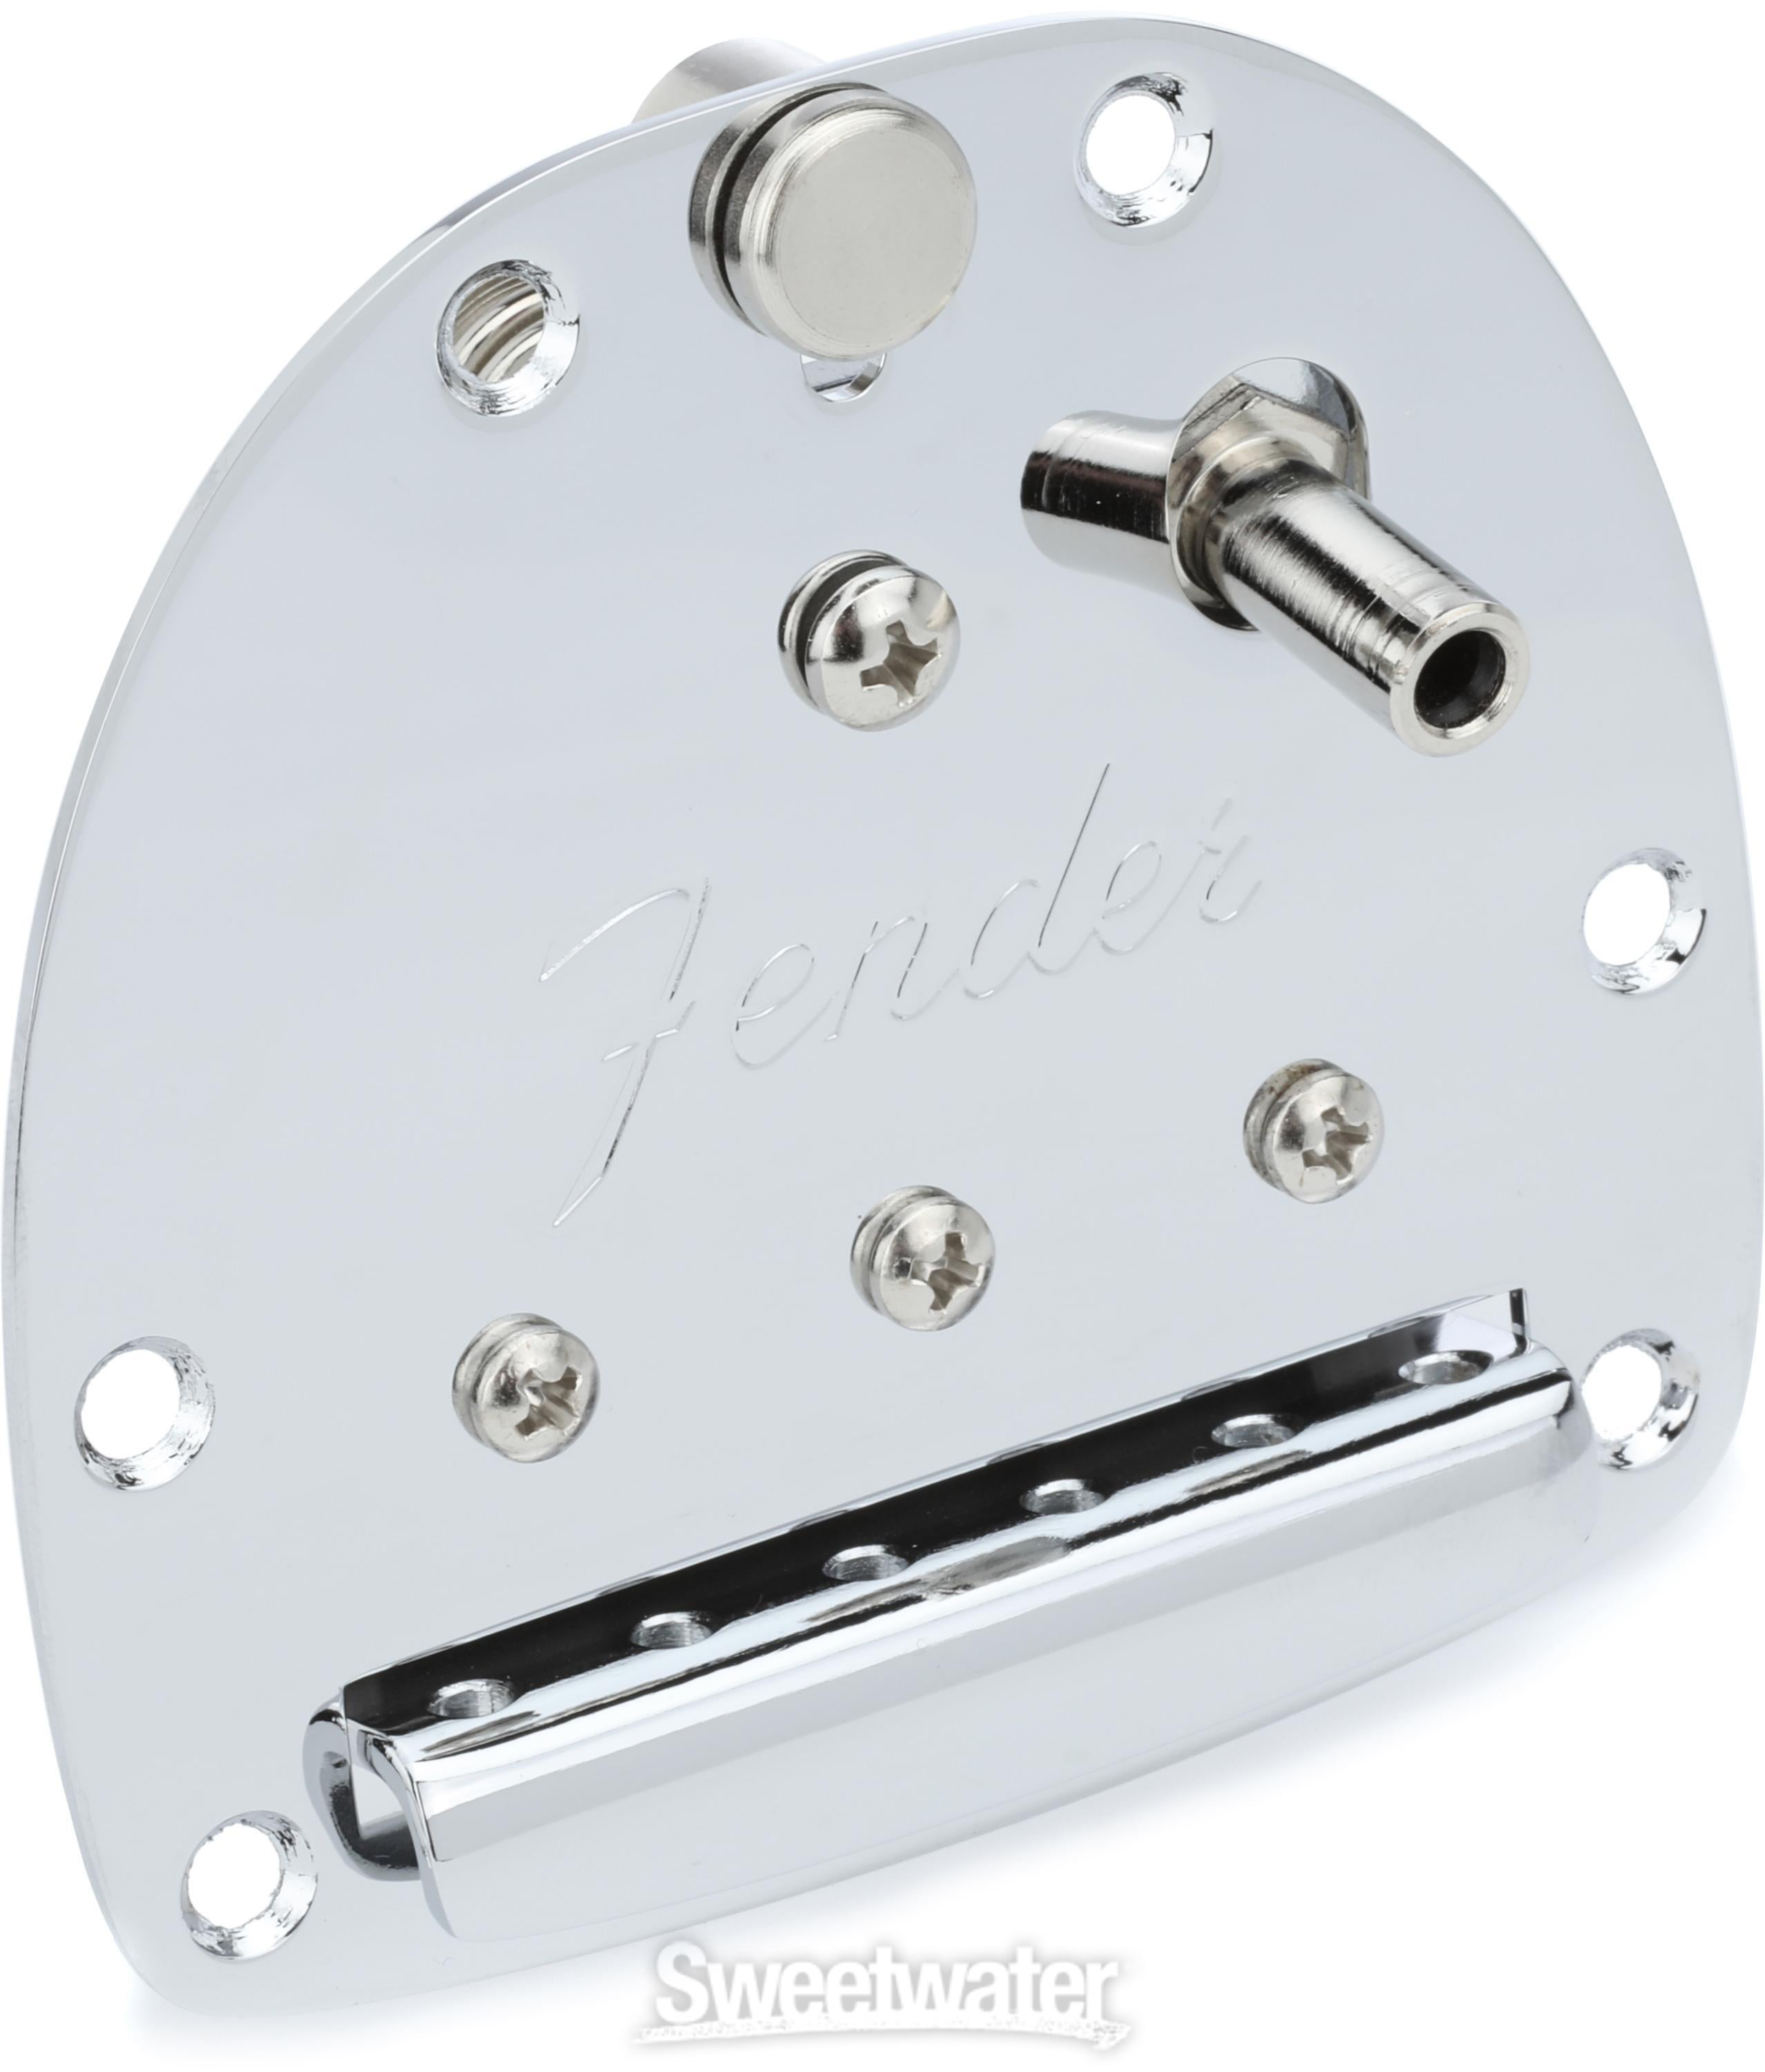 Fender フェンダー エレキギター用トレモロユニット PANORAMA